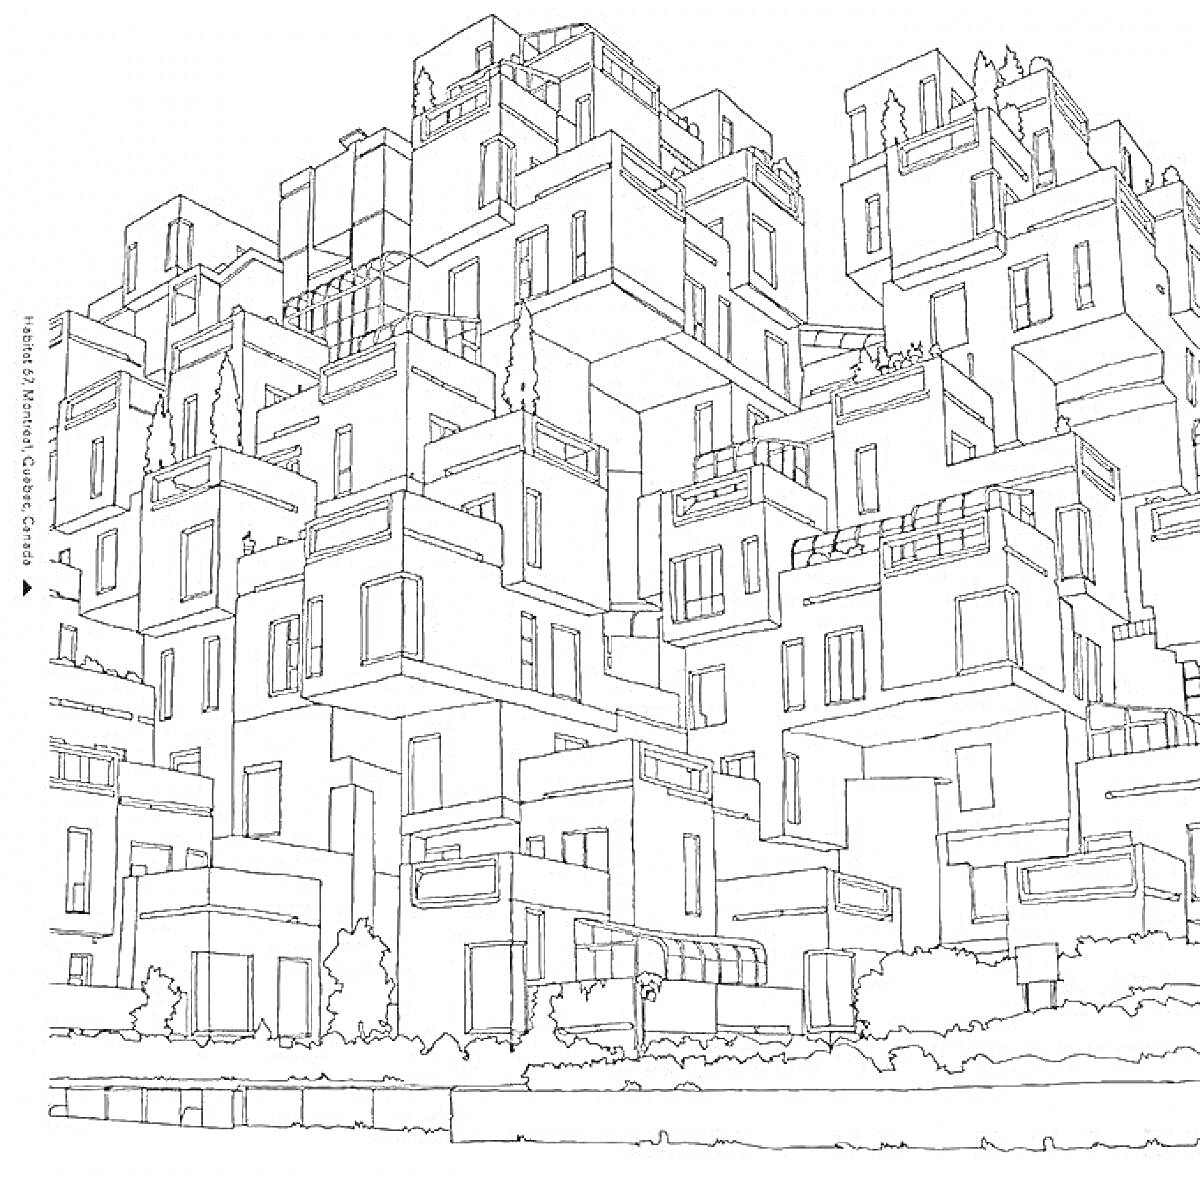 Раскраска Антистресс раскраска с изображением многоэтажных домиков с балконами и окнами, окруженных деревьями и кустарниками